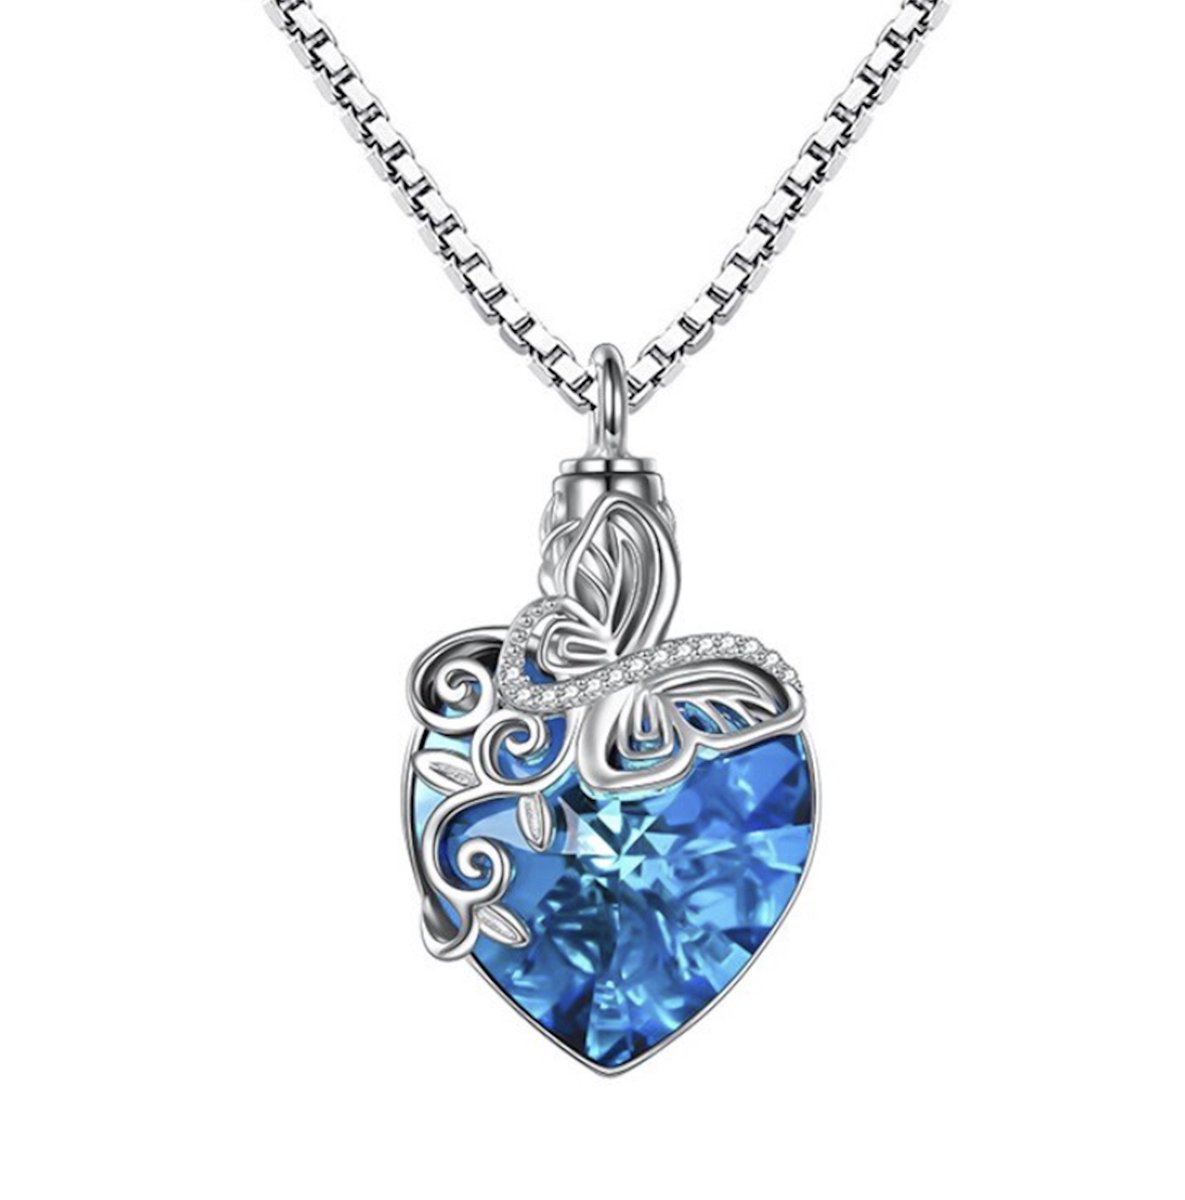 Bijoux by Ive - Ashanger - Assieraad met ketting - Collier - Blauw hart met zilverkleurige vlinder en transparante steentjes